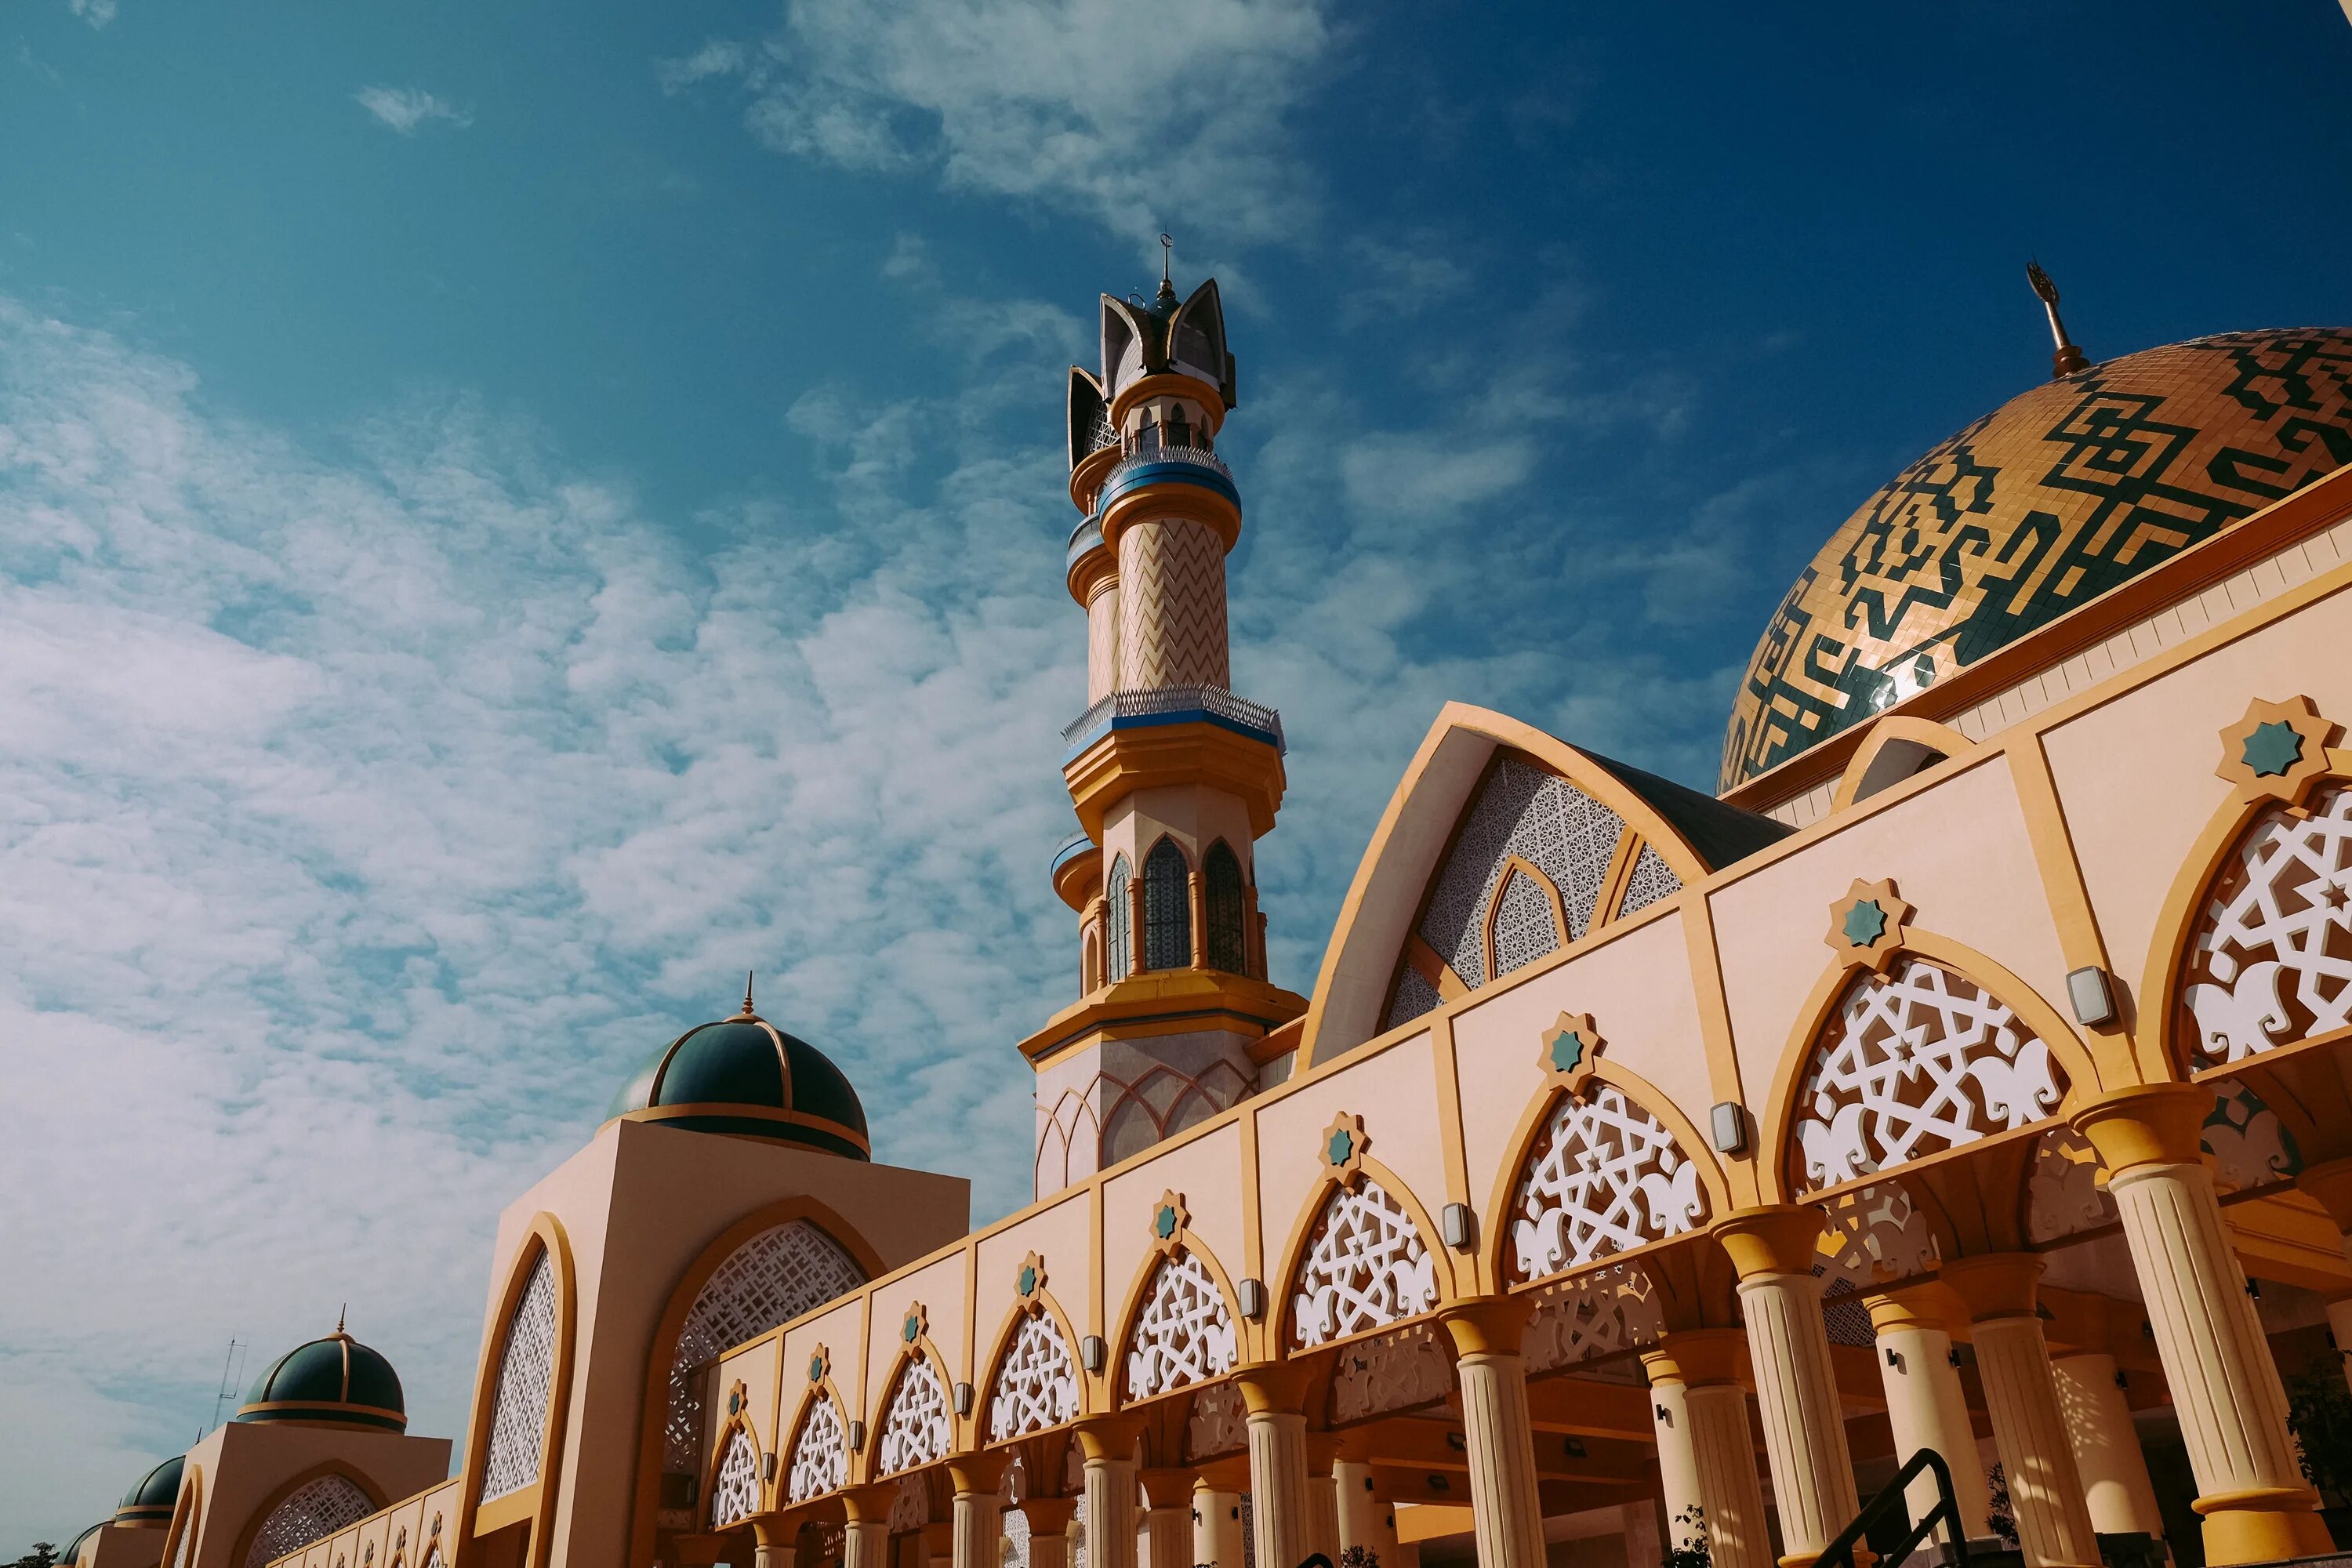 Мечеть 1080p. Мечеть HDR. Пустыня мечеть картинки. Фото мечети в высоком разрешении.